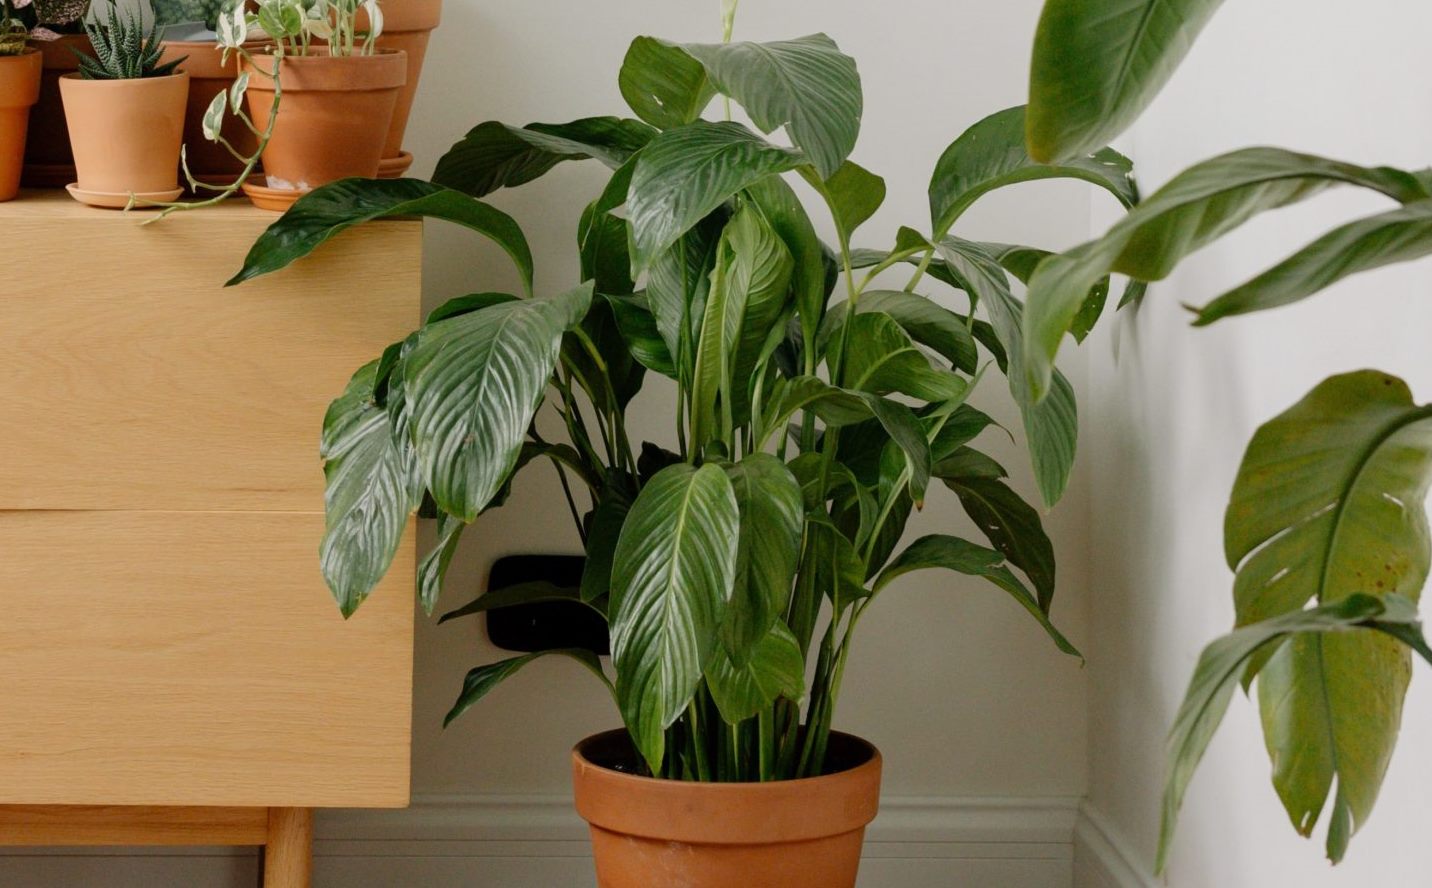 Комнатное растение с большими зелеными листьями - спатифиллум